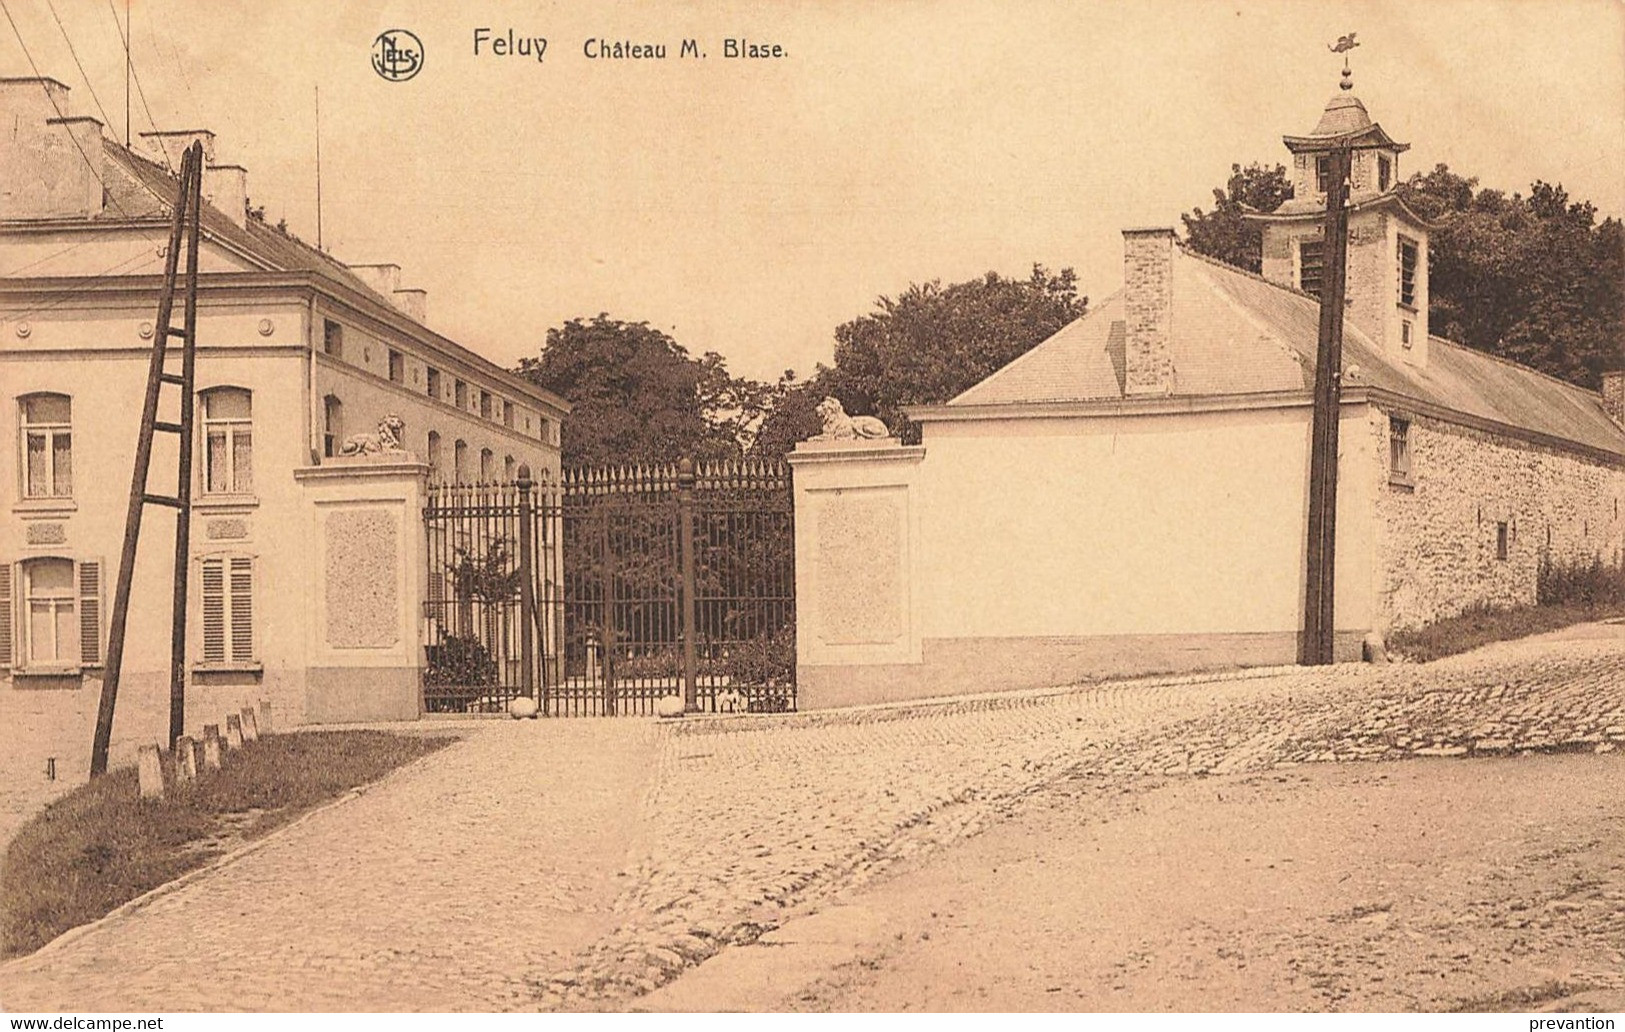 FELUY - Château M. Blase - Seneffe